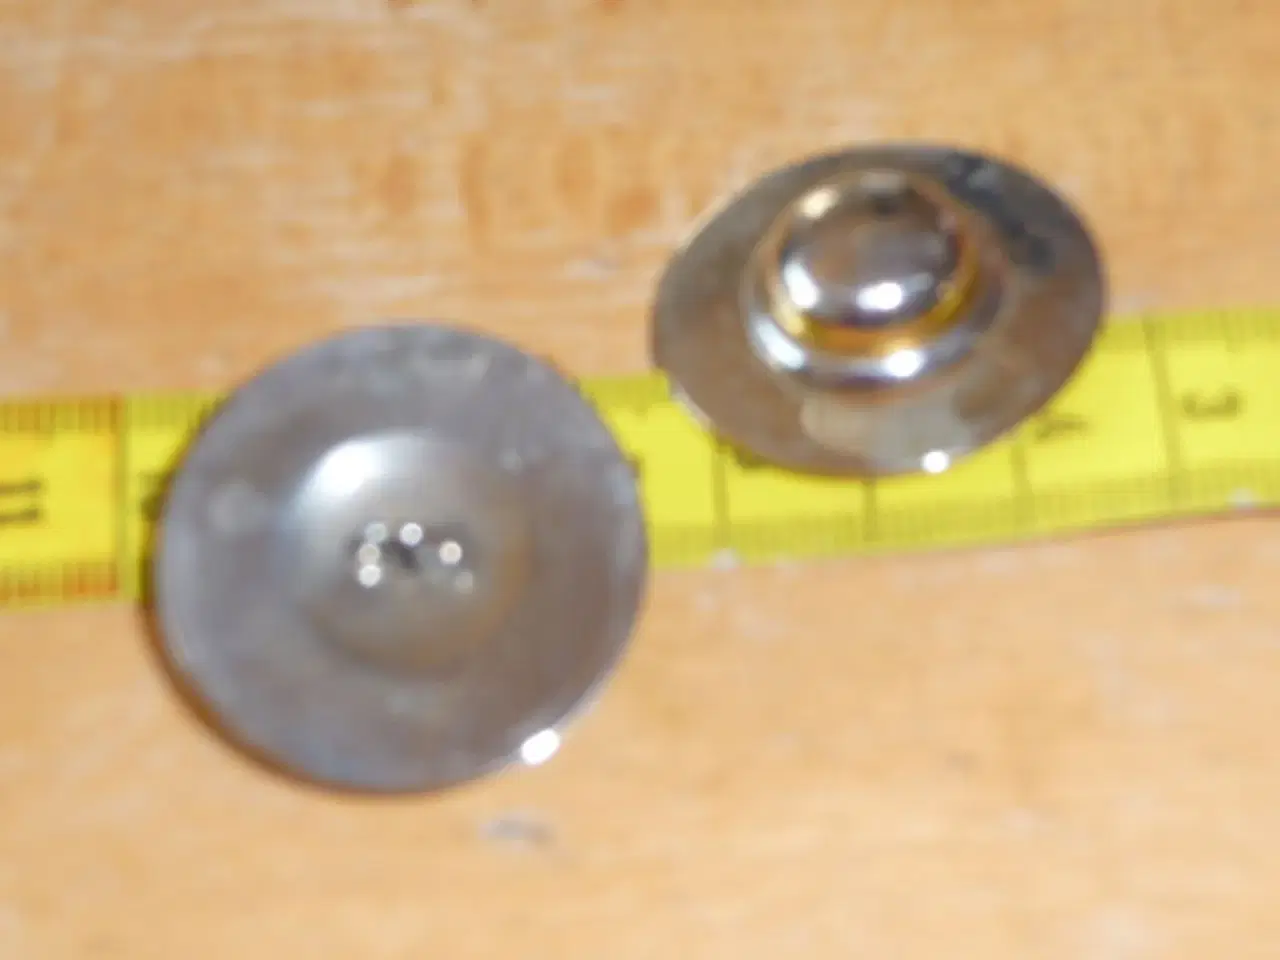 Billede 3 - 2 metal knapper der ligner en hat